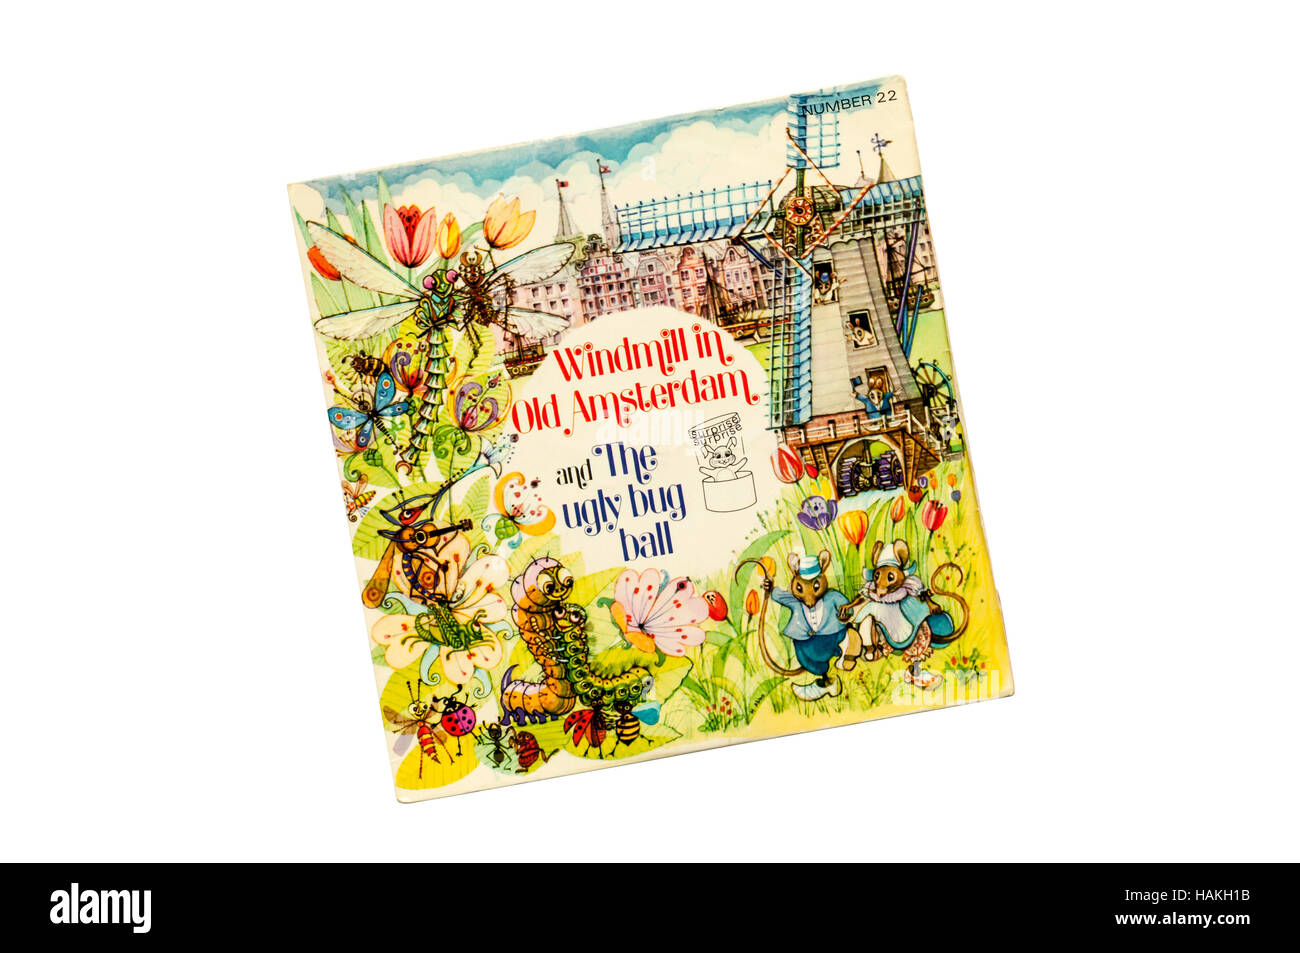 Moulin dans la vieille ville d'Amsterdam et le vilain bug Ball par Ronnie Hilton publié en 1970. Banque D'Images